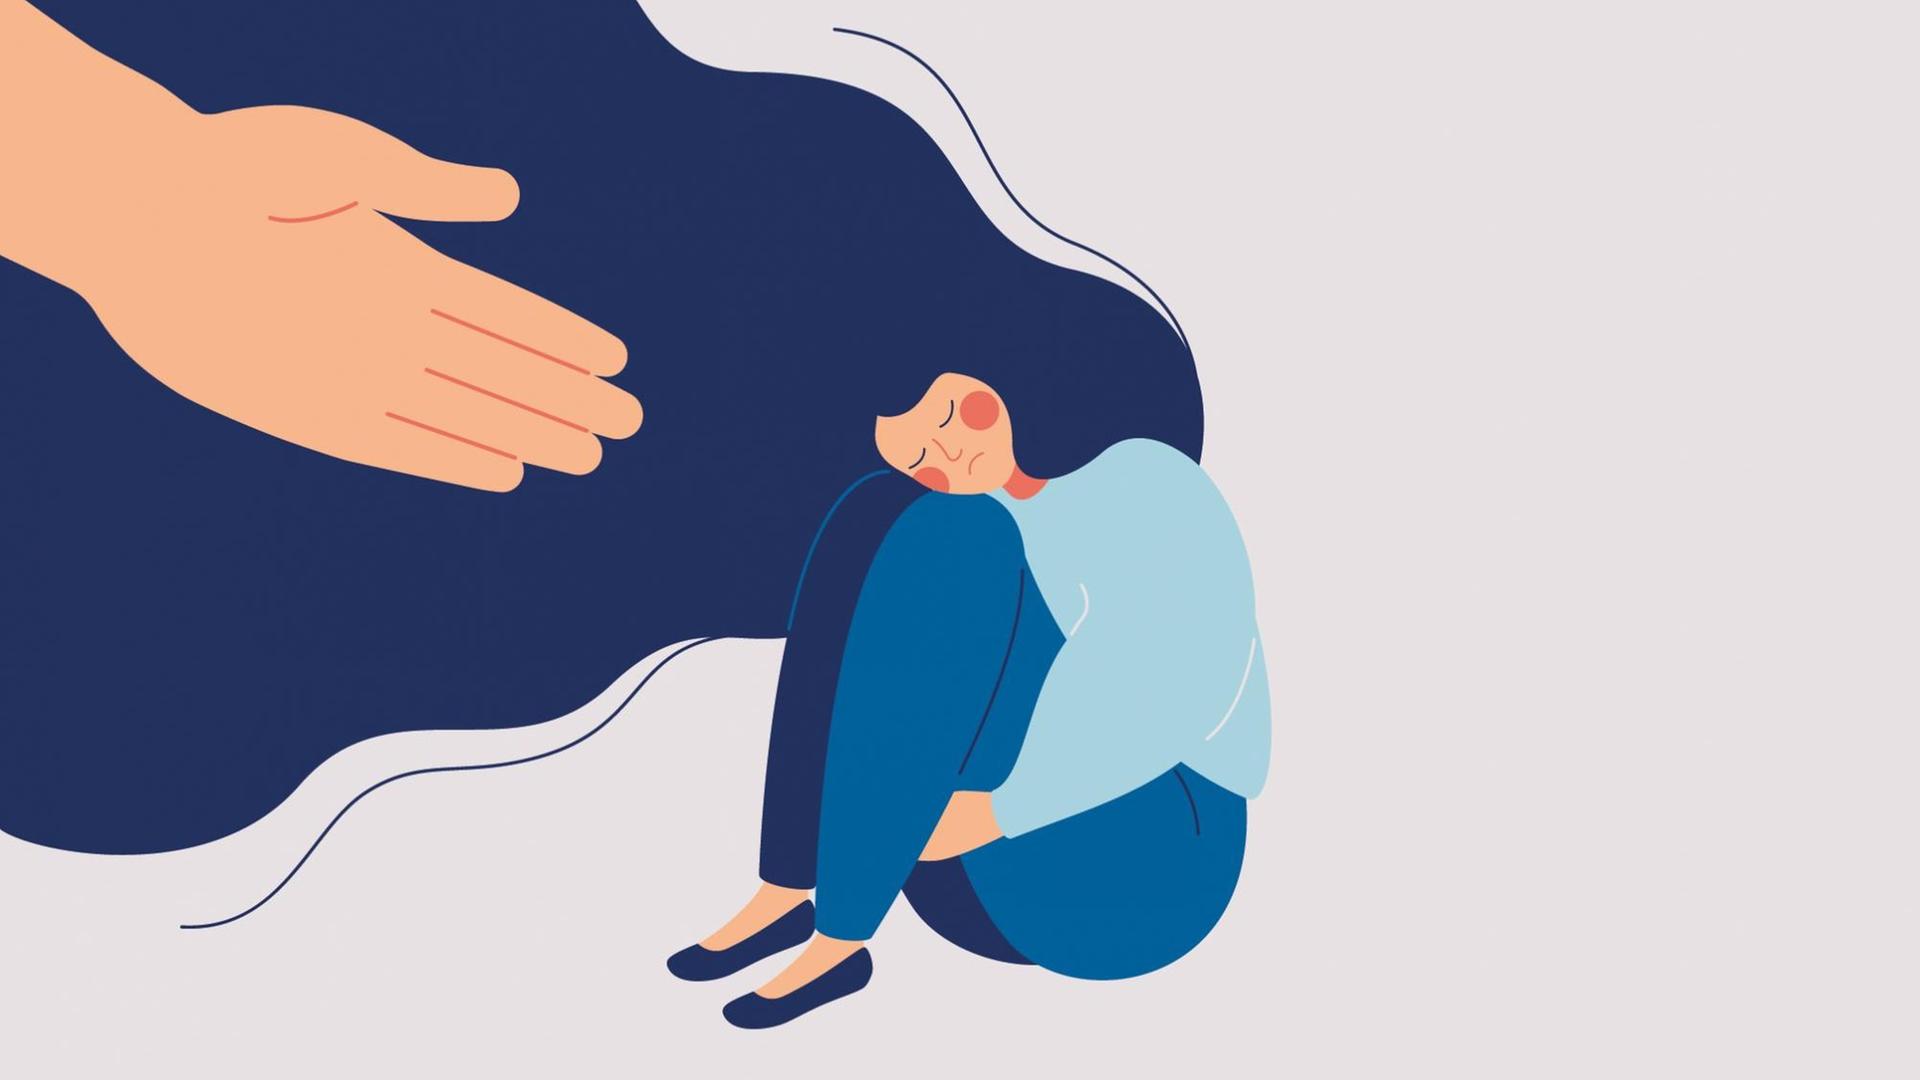 Die Illustration einer Frau mit verschlossenen Augen, die am Boden sitzt — eine Hand streckt sich zu ihr und will helfen.